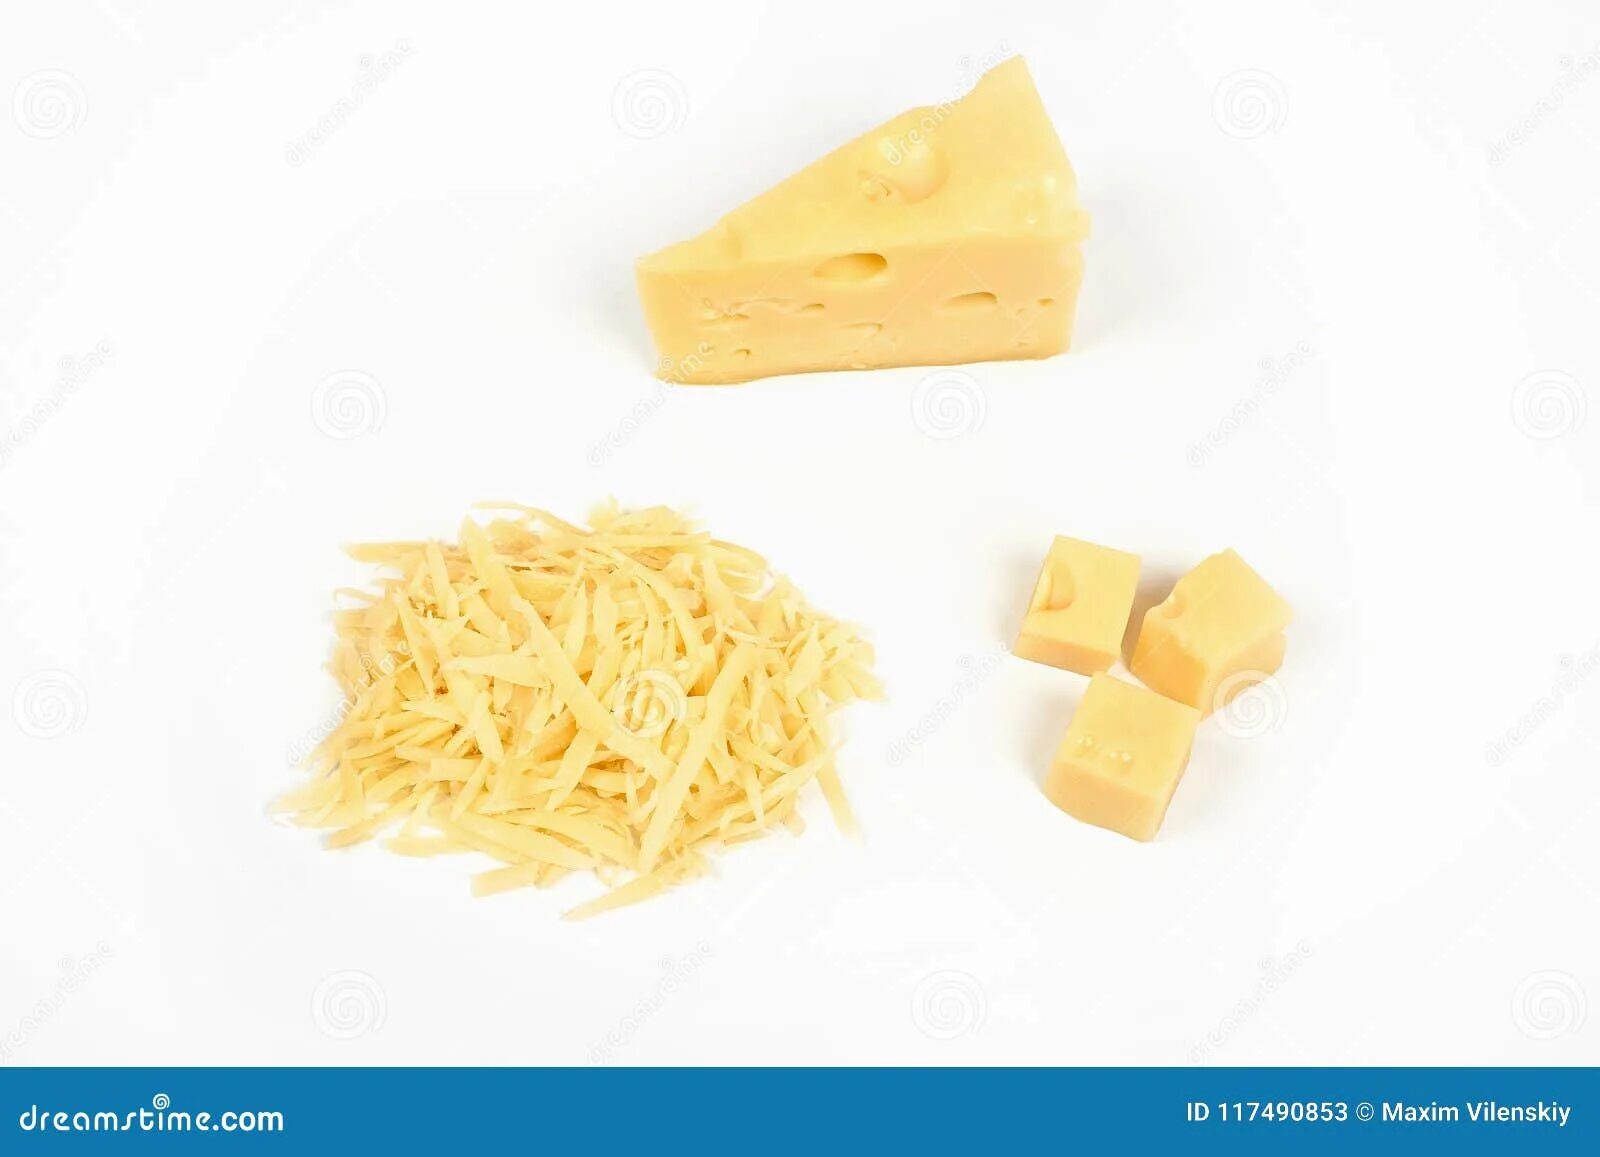 Кусок сыра сколько грамм. Натертый сыр на белом фоне. 50 Грамм натертого сыра. Тертый сыр на белом фоне. Натертый сыр без фона.